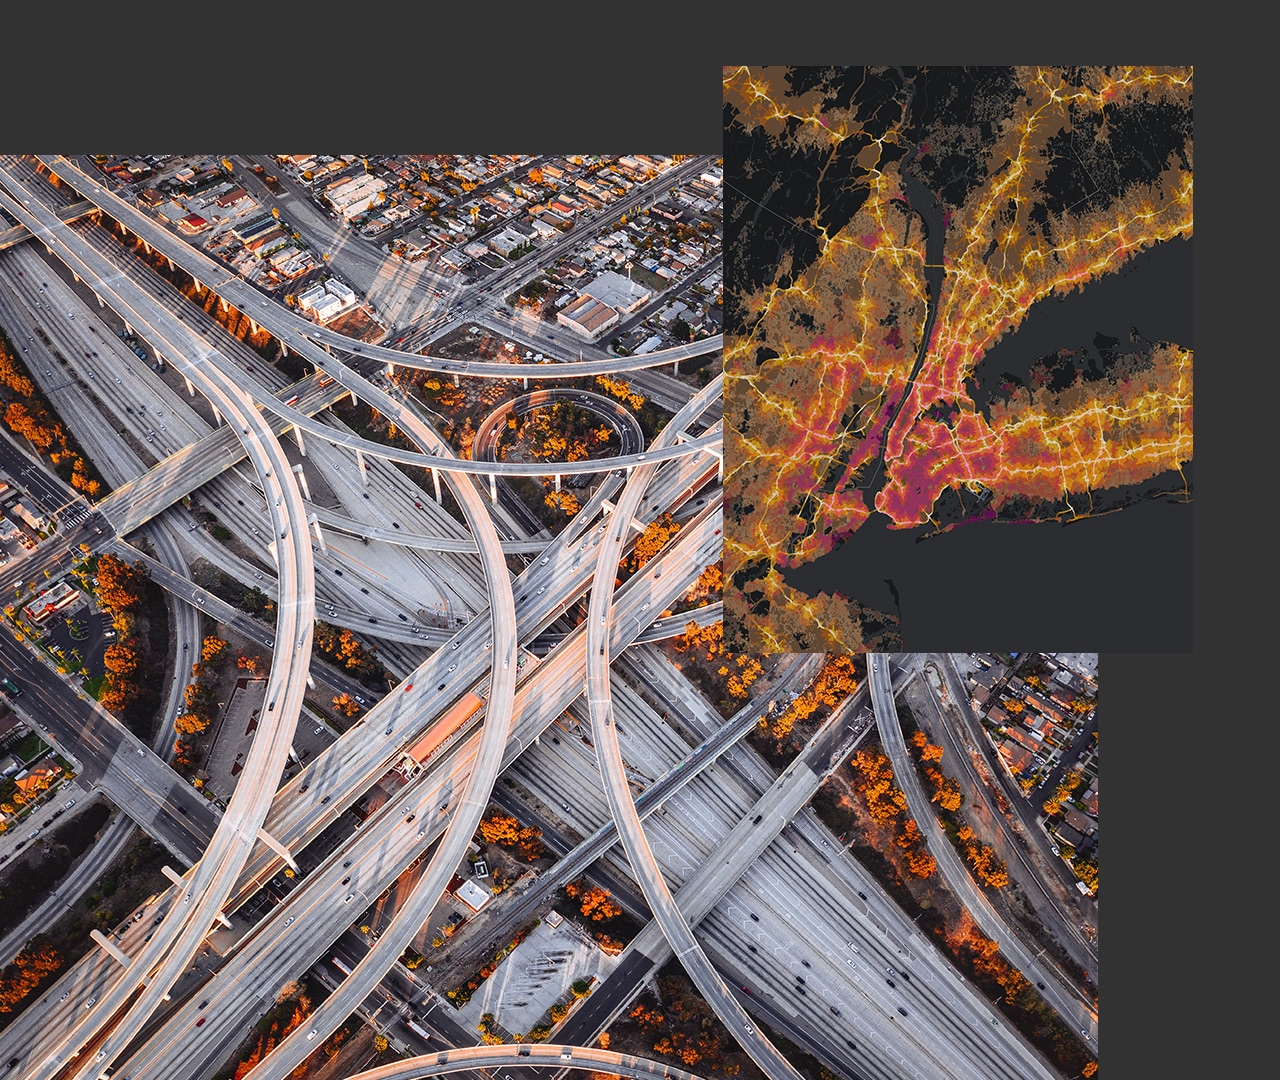 Luftbild von miteinander verbundenen Schnellstraßen und städtischen Gebäuden, daneben eine digitale Landkarte mit gelben Routen